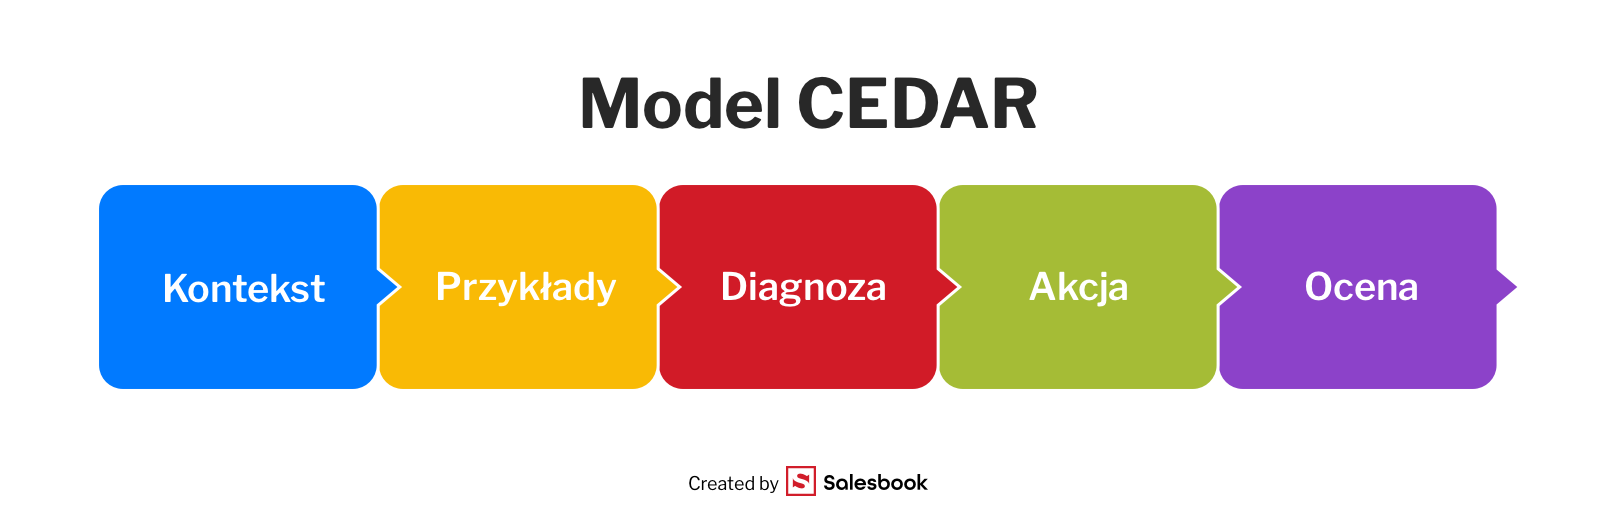 Fot. 7. Model informacji zwrotnej CEDAR i jego elementy.